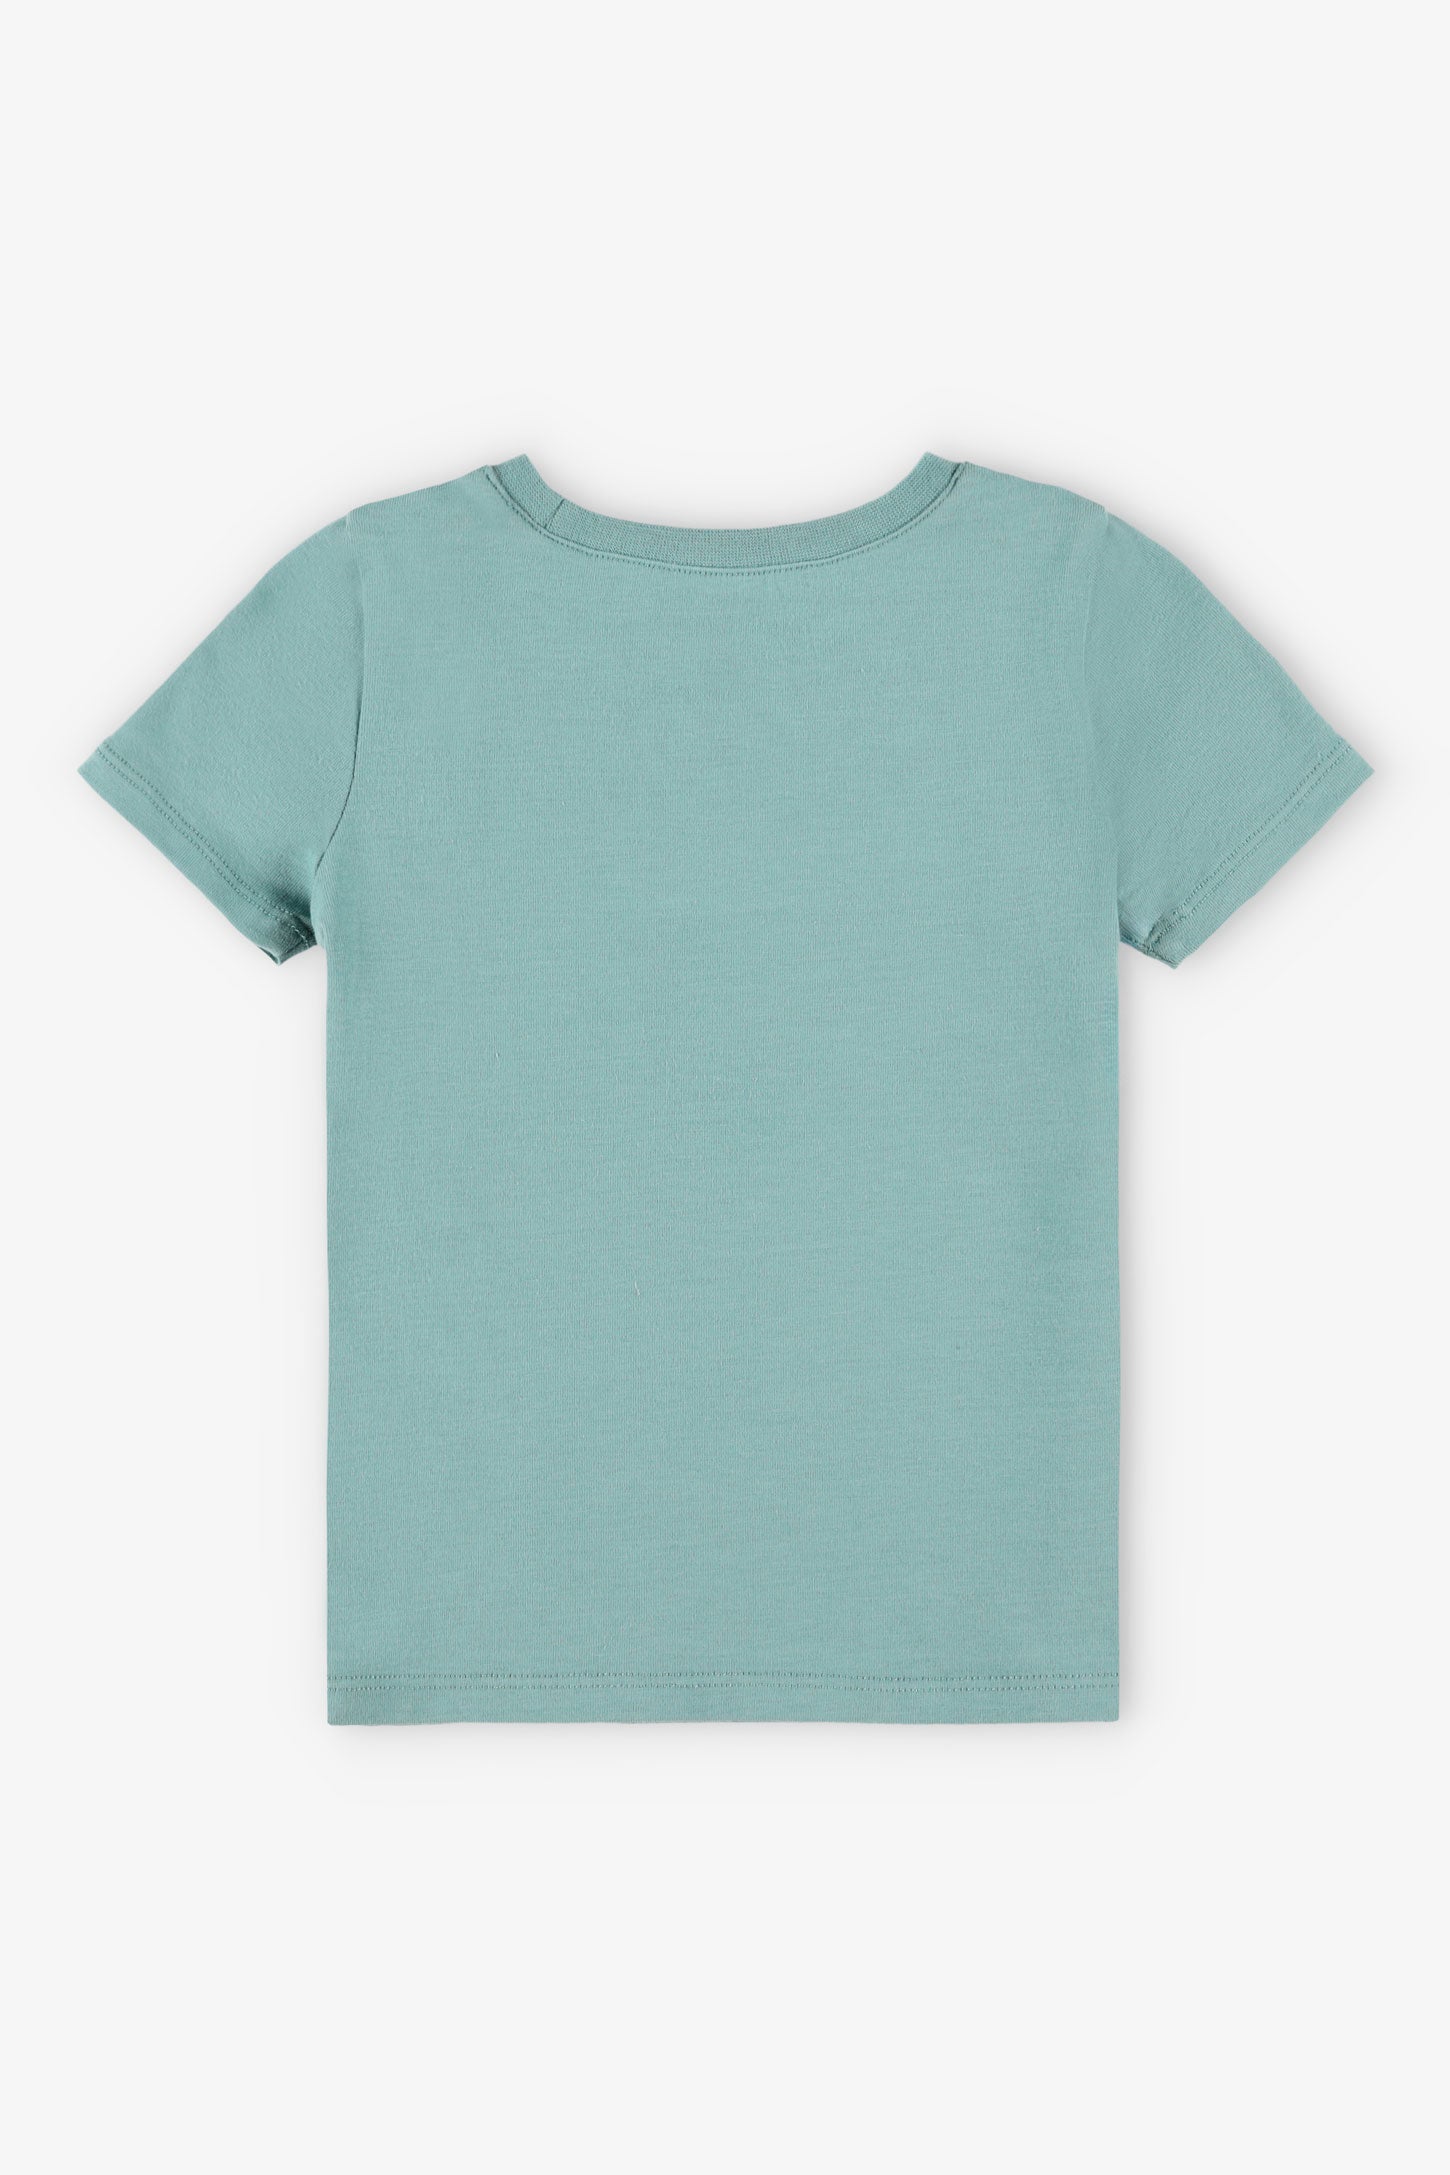 Duos futés, T-shirt à poche, 2T-3T, 2/20$ - Bébé fille && MENTHE